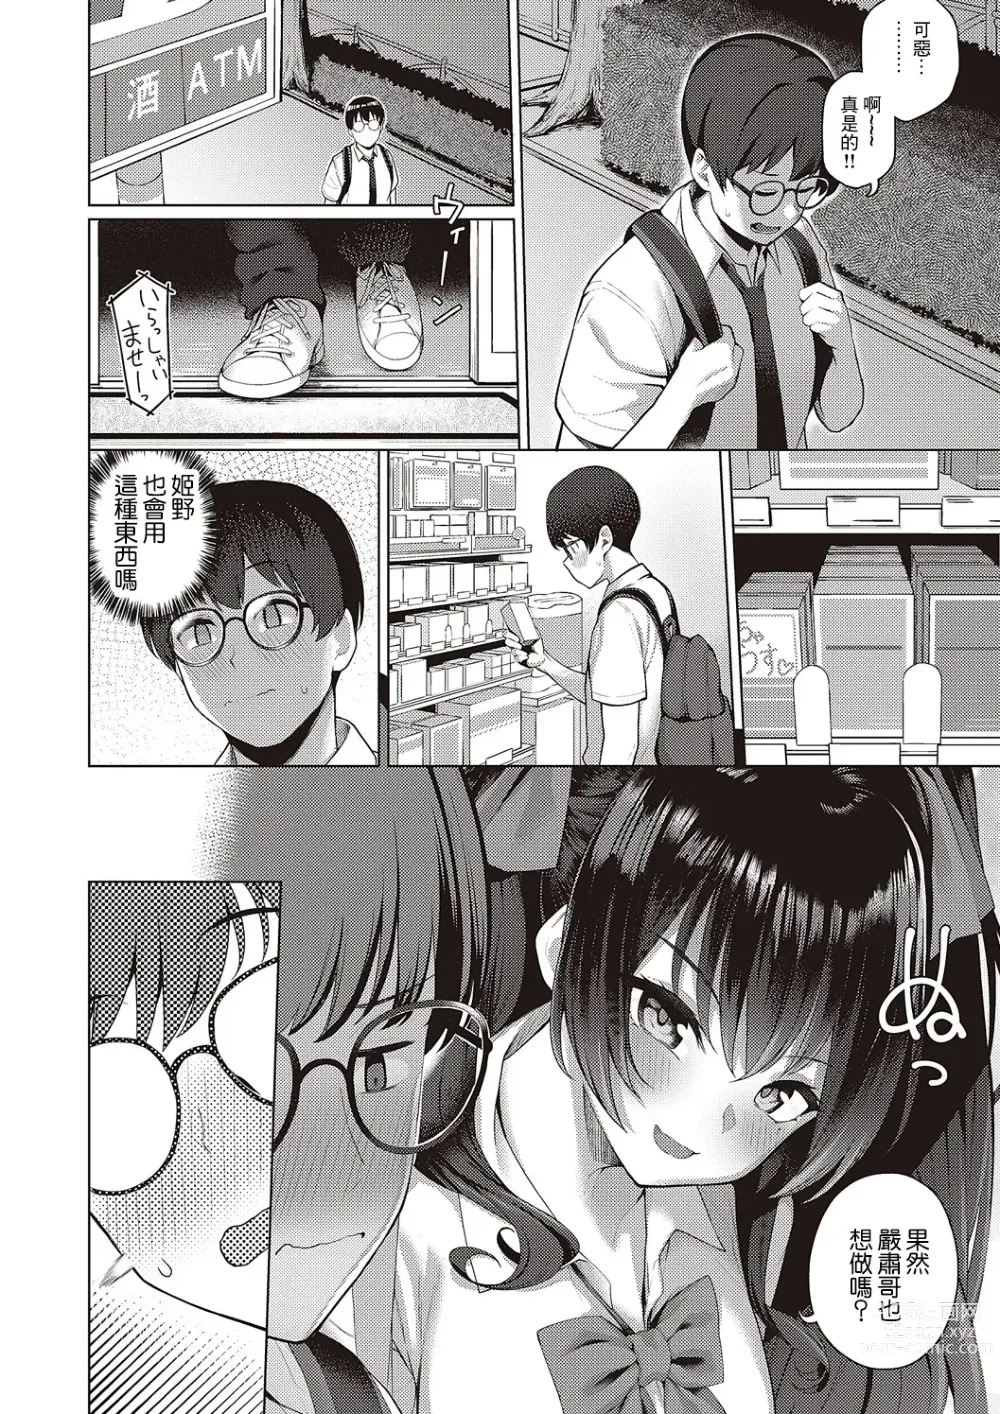 Page 10 of manga Majime to Fumajime